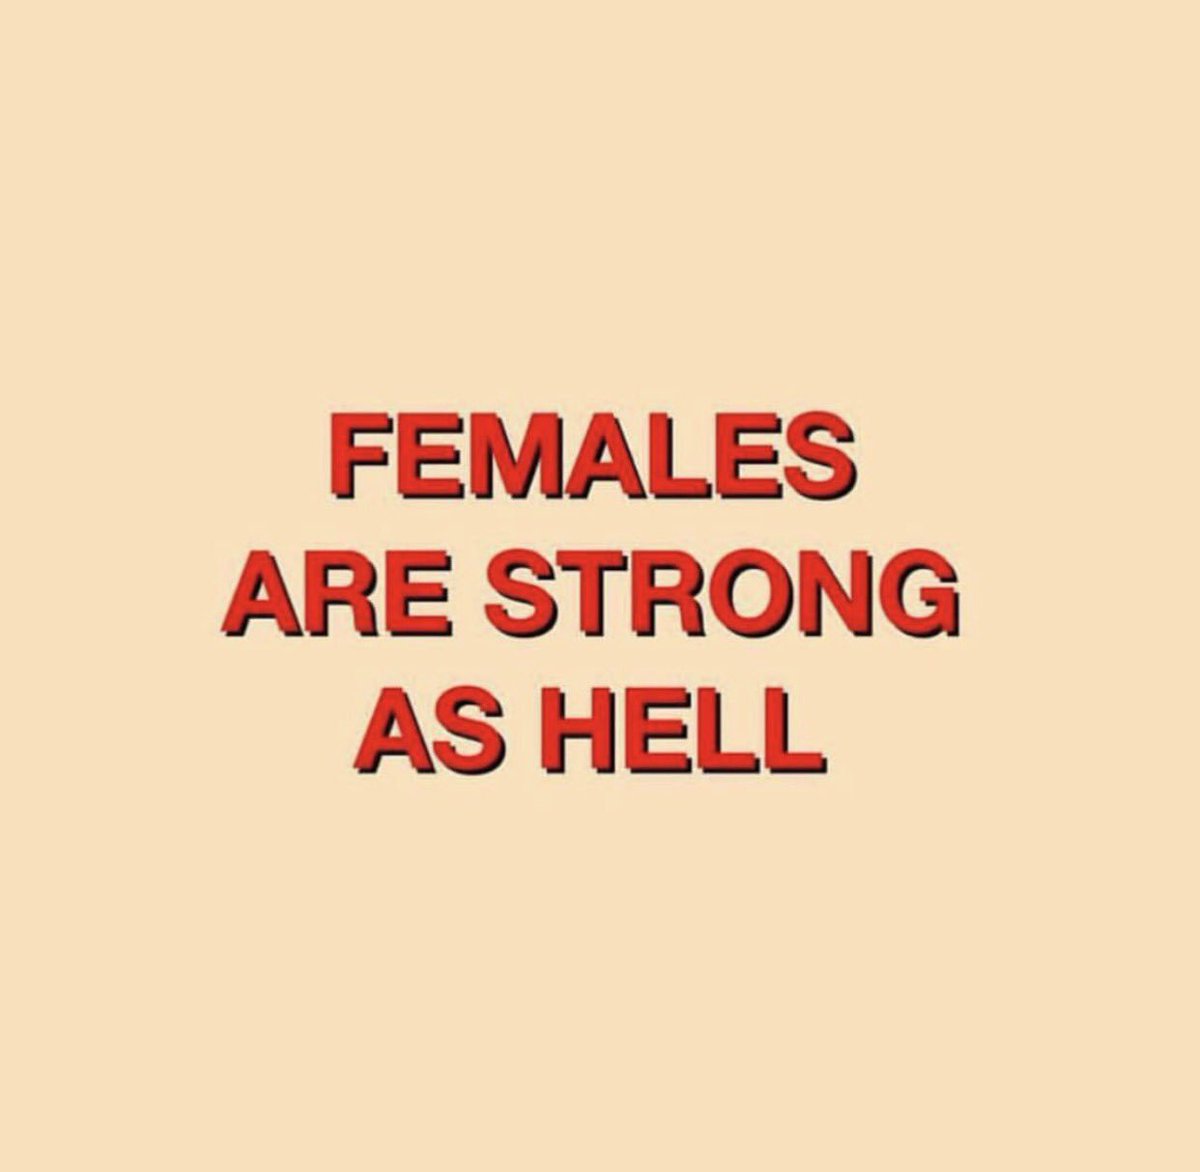 Happy #InternationalWomensDay to all my Ladies!!! ❤❤❤ https://t.co/lQCaUymD6V